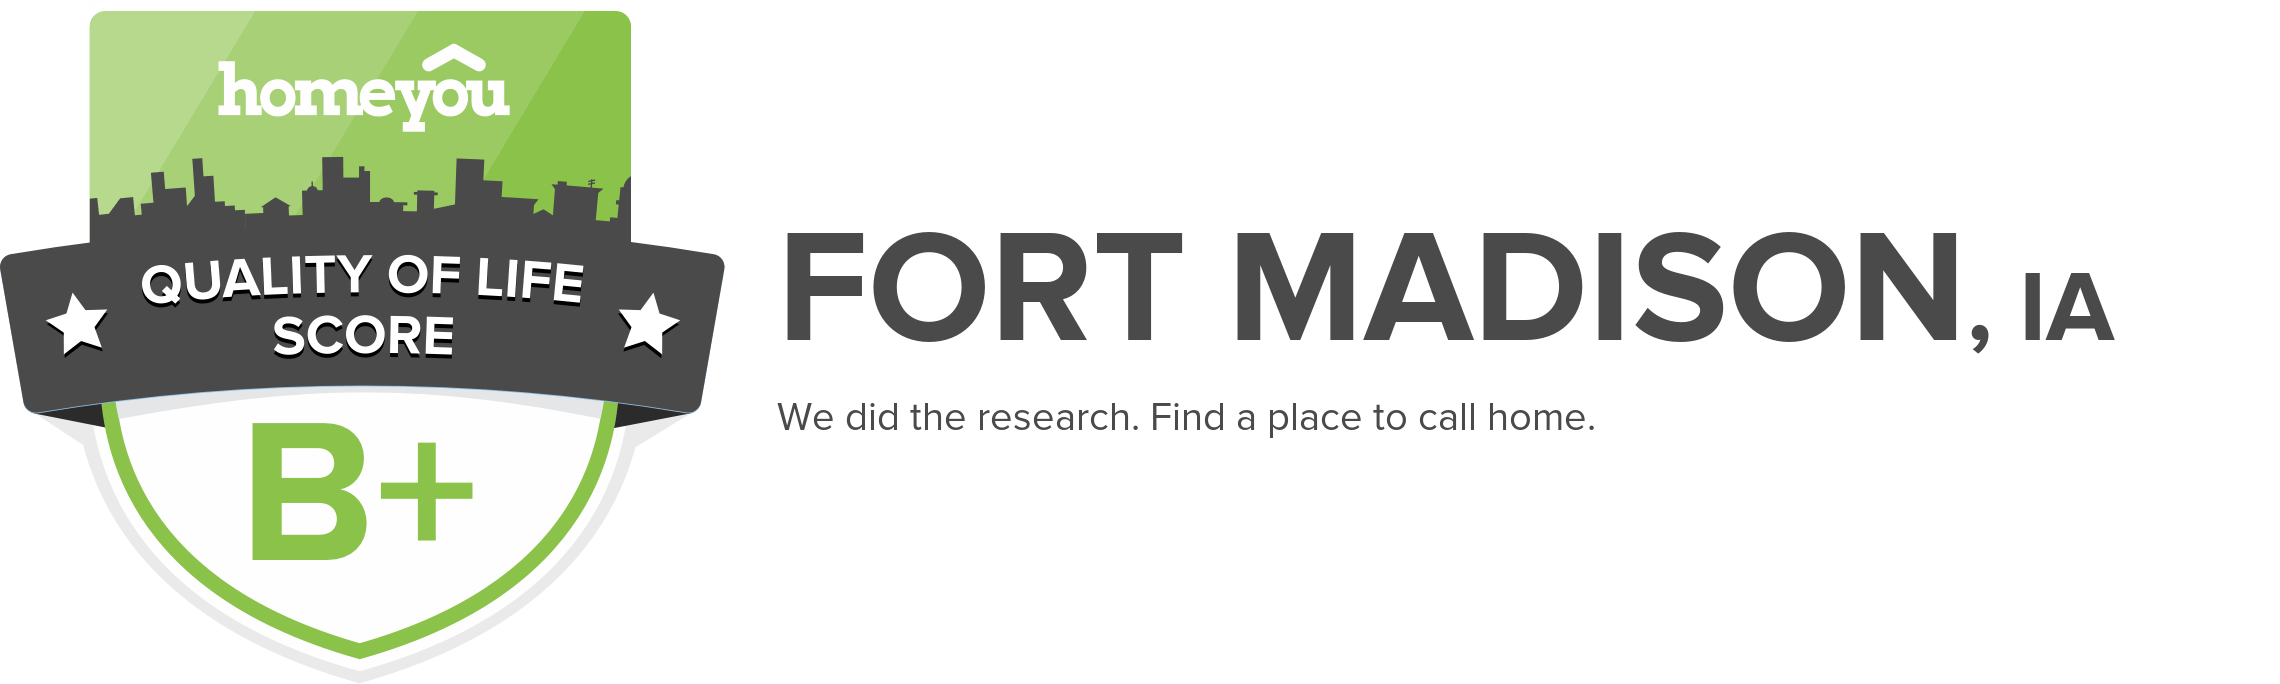 Fort Madison, IA